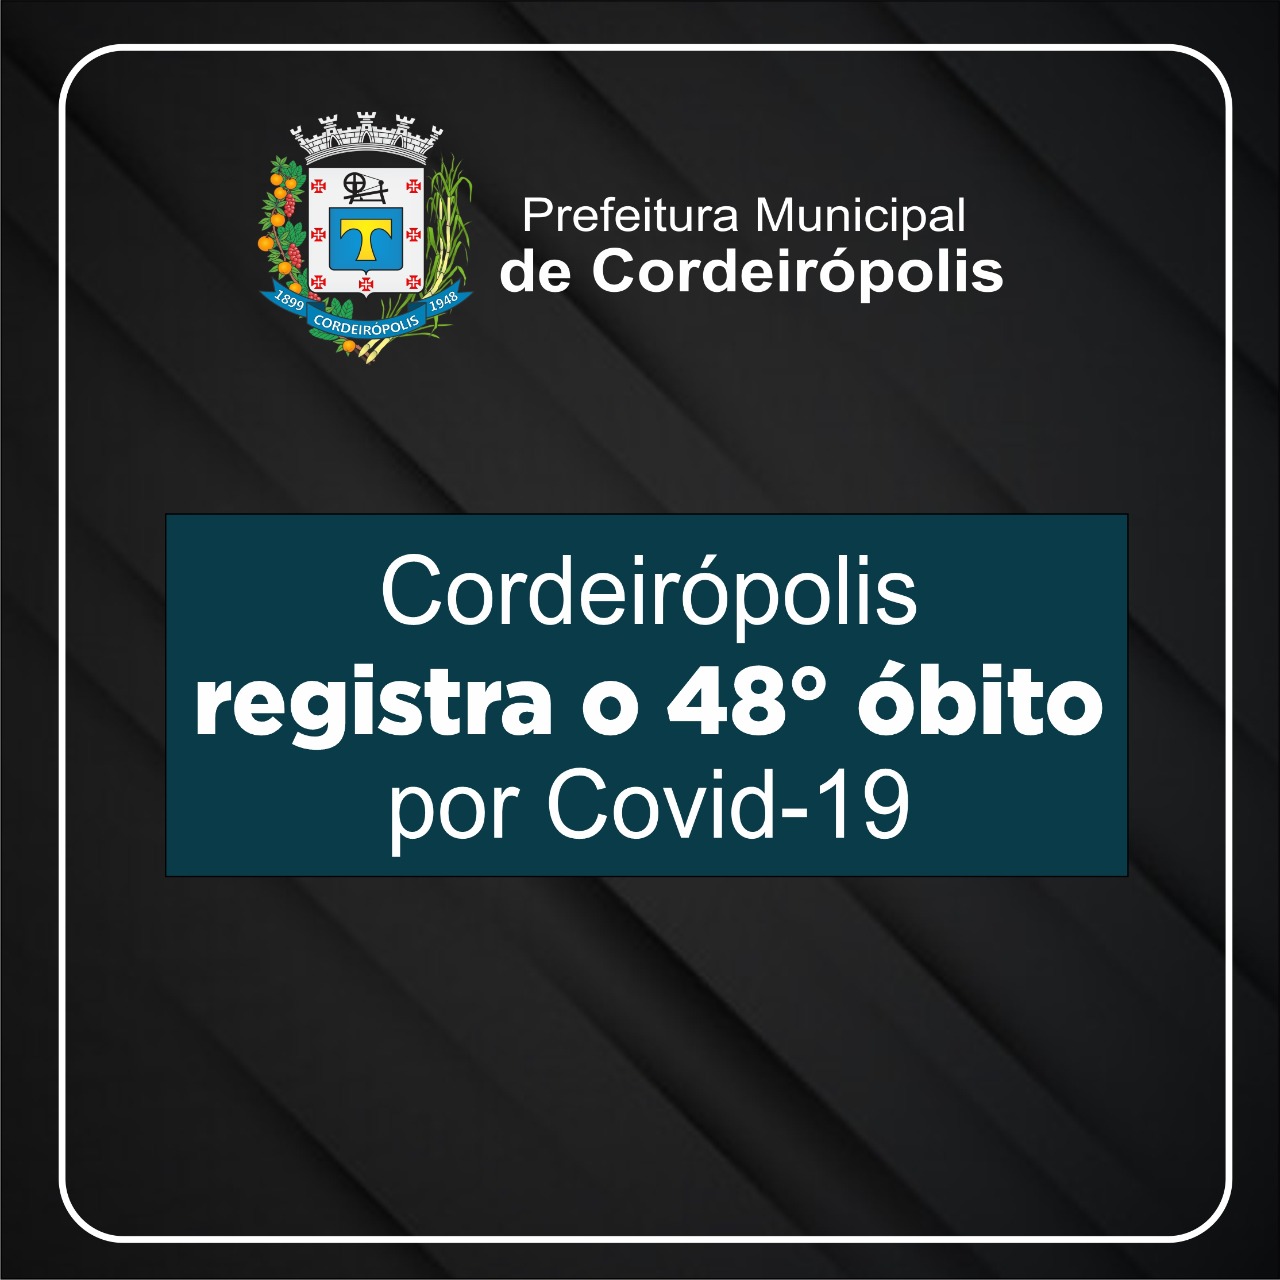 Cordeirópolis registra o 48° óbito por Covid